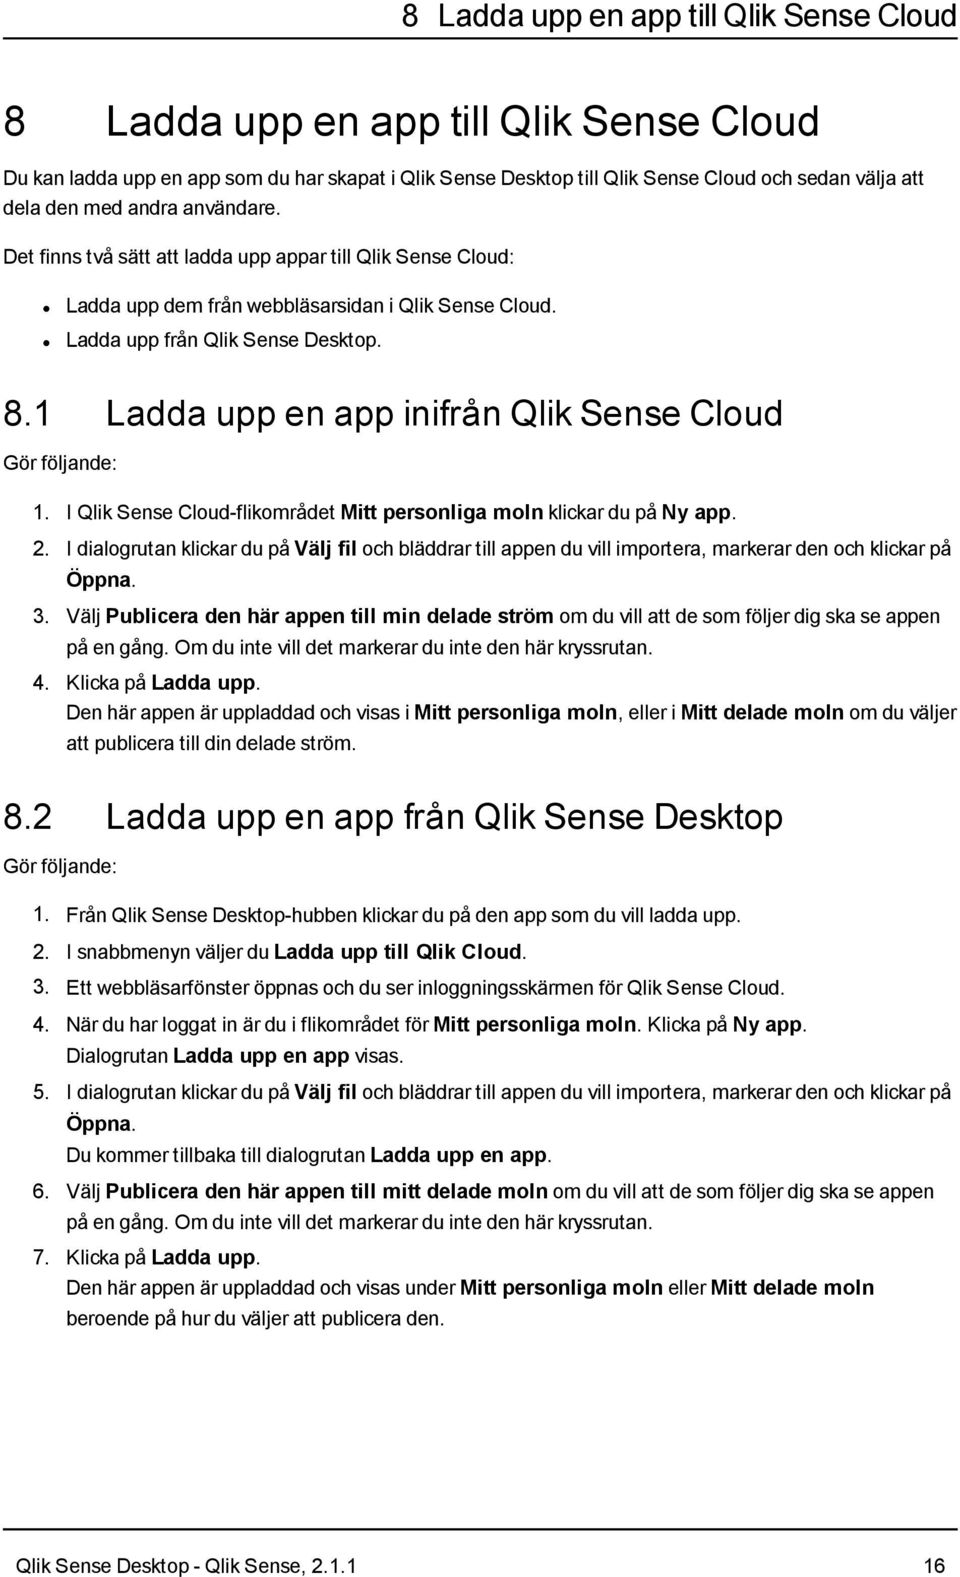 1 Ladda upp en app inifrån Qlik Sense Cloud Gör följande: 1. I Qlik Sense Cloud-flikområdet Mitt personliga moln klickar du på Ny app. 2.